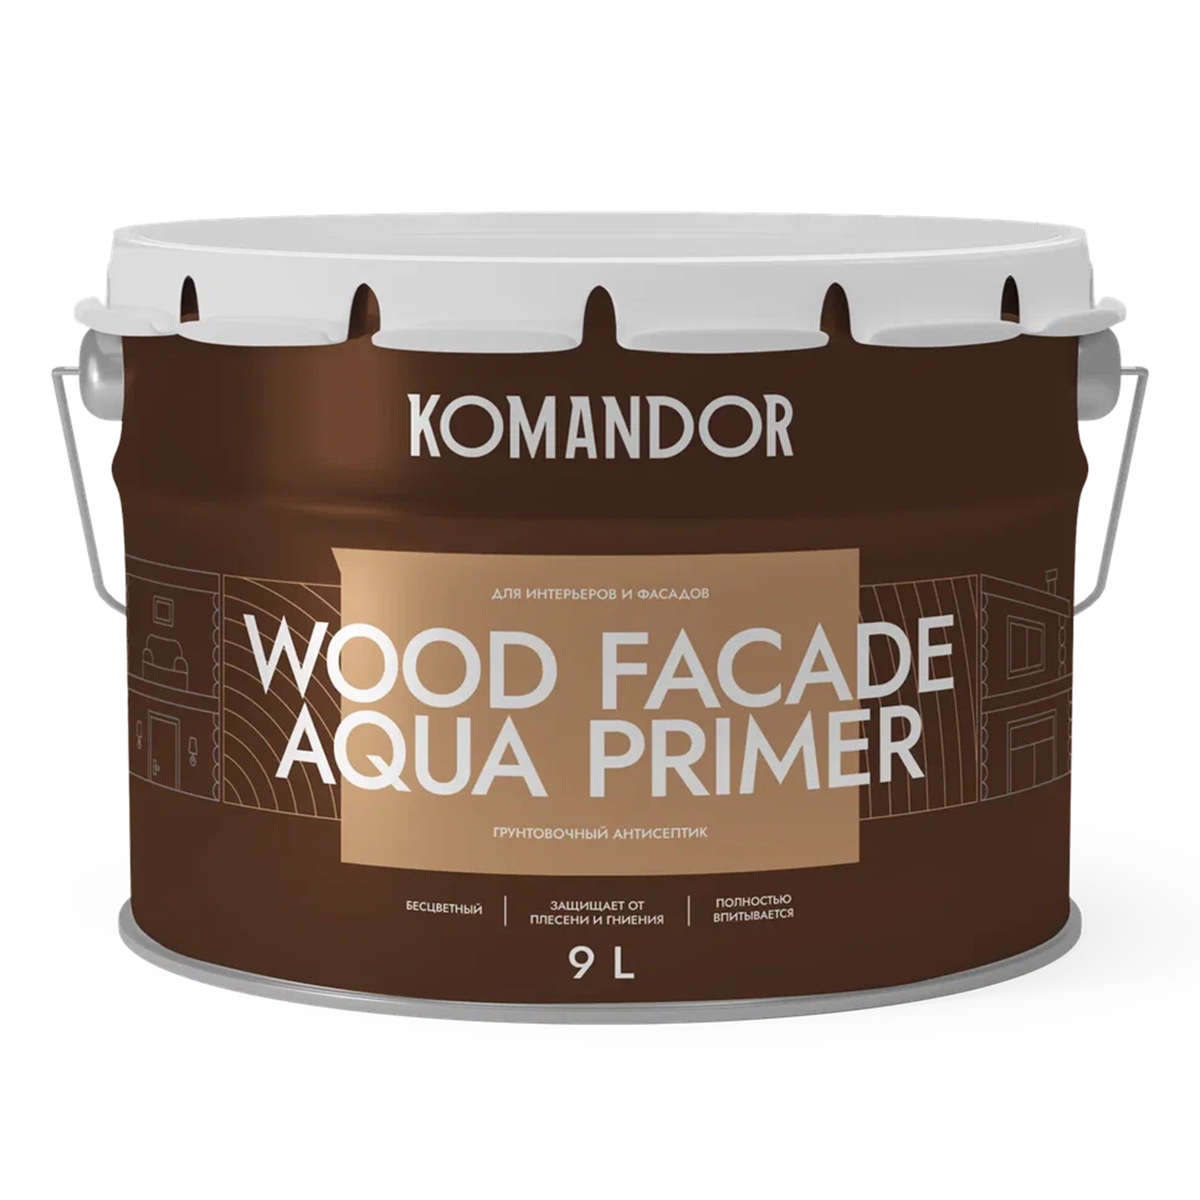 Грунт-антисептик для дерева Komandor Wood Facade Aqua Primer, 9 л грунт антисептик рогнеда